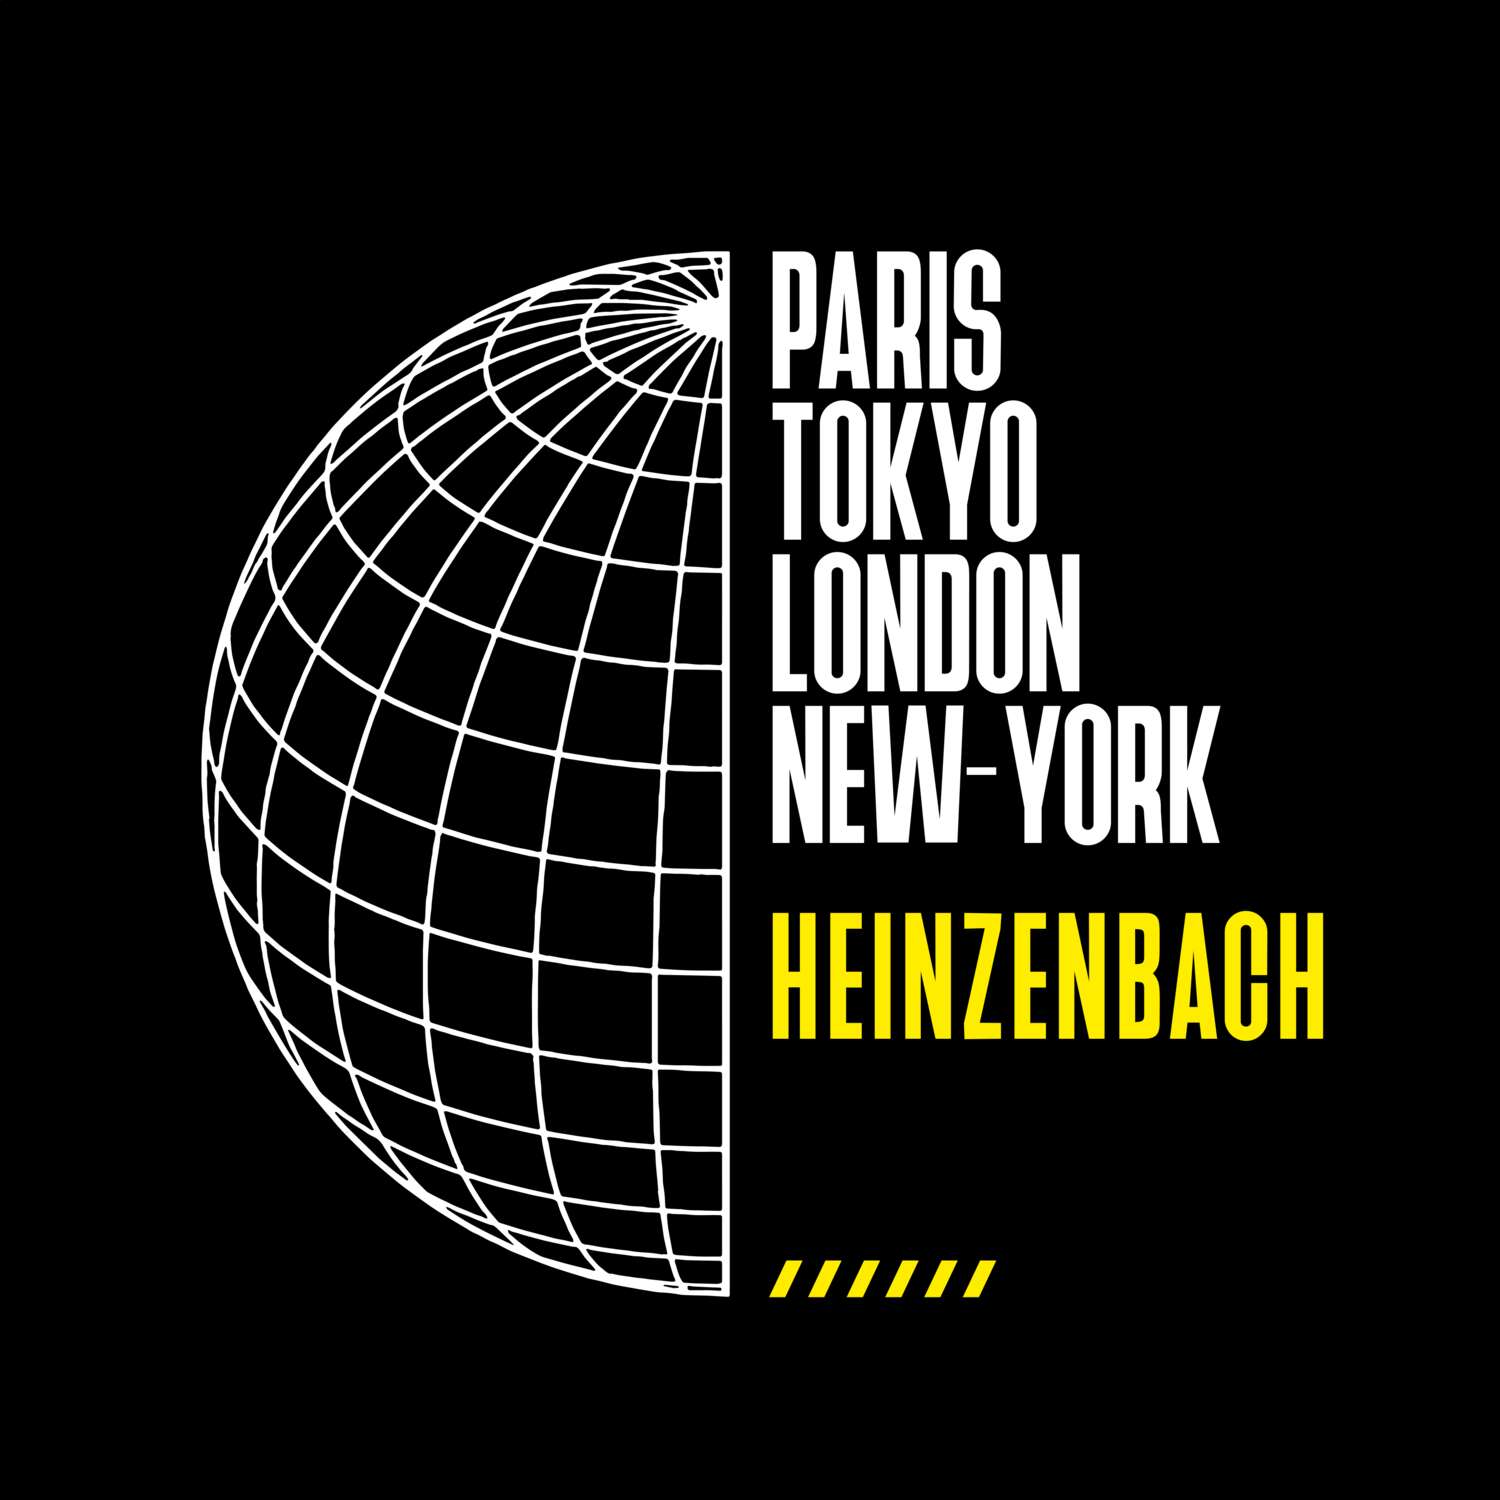 Heinzenbach T-Shirt »Paris Tokyo London«